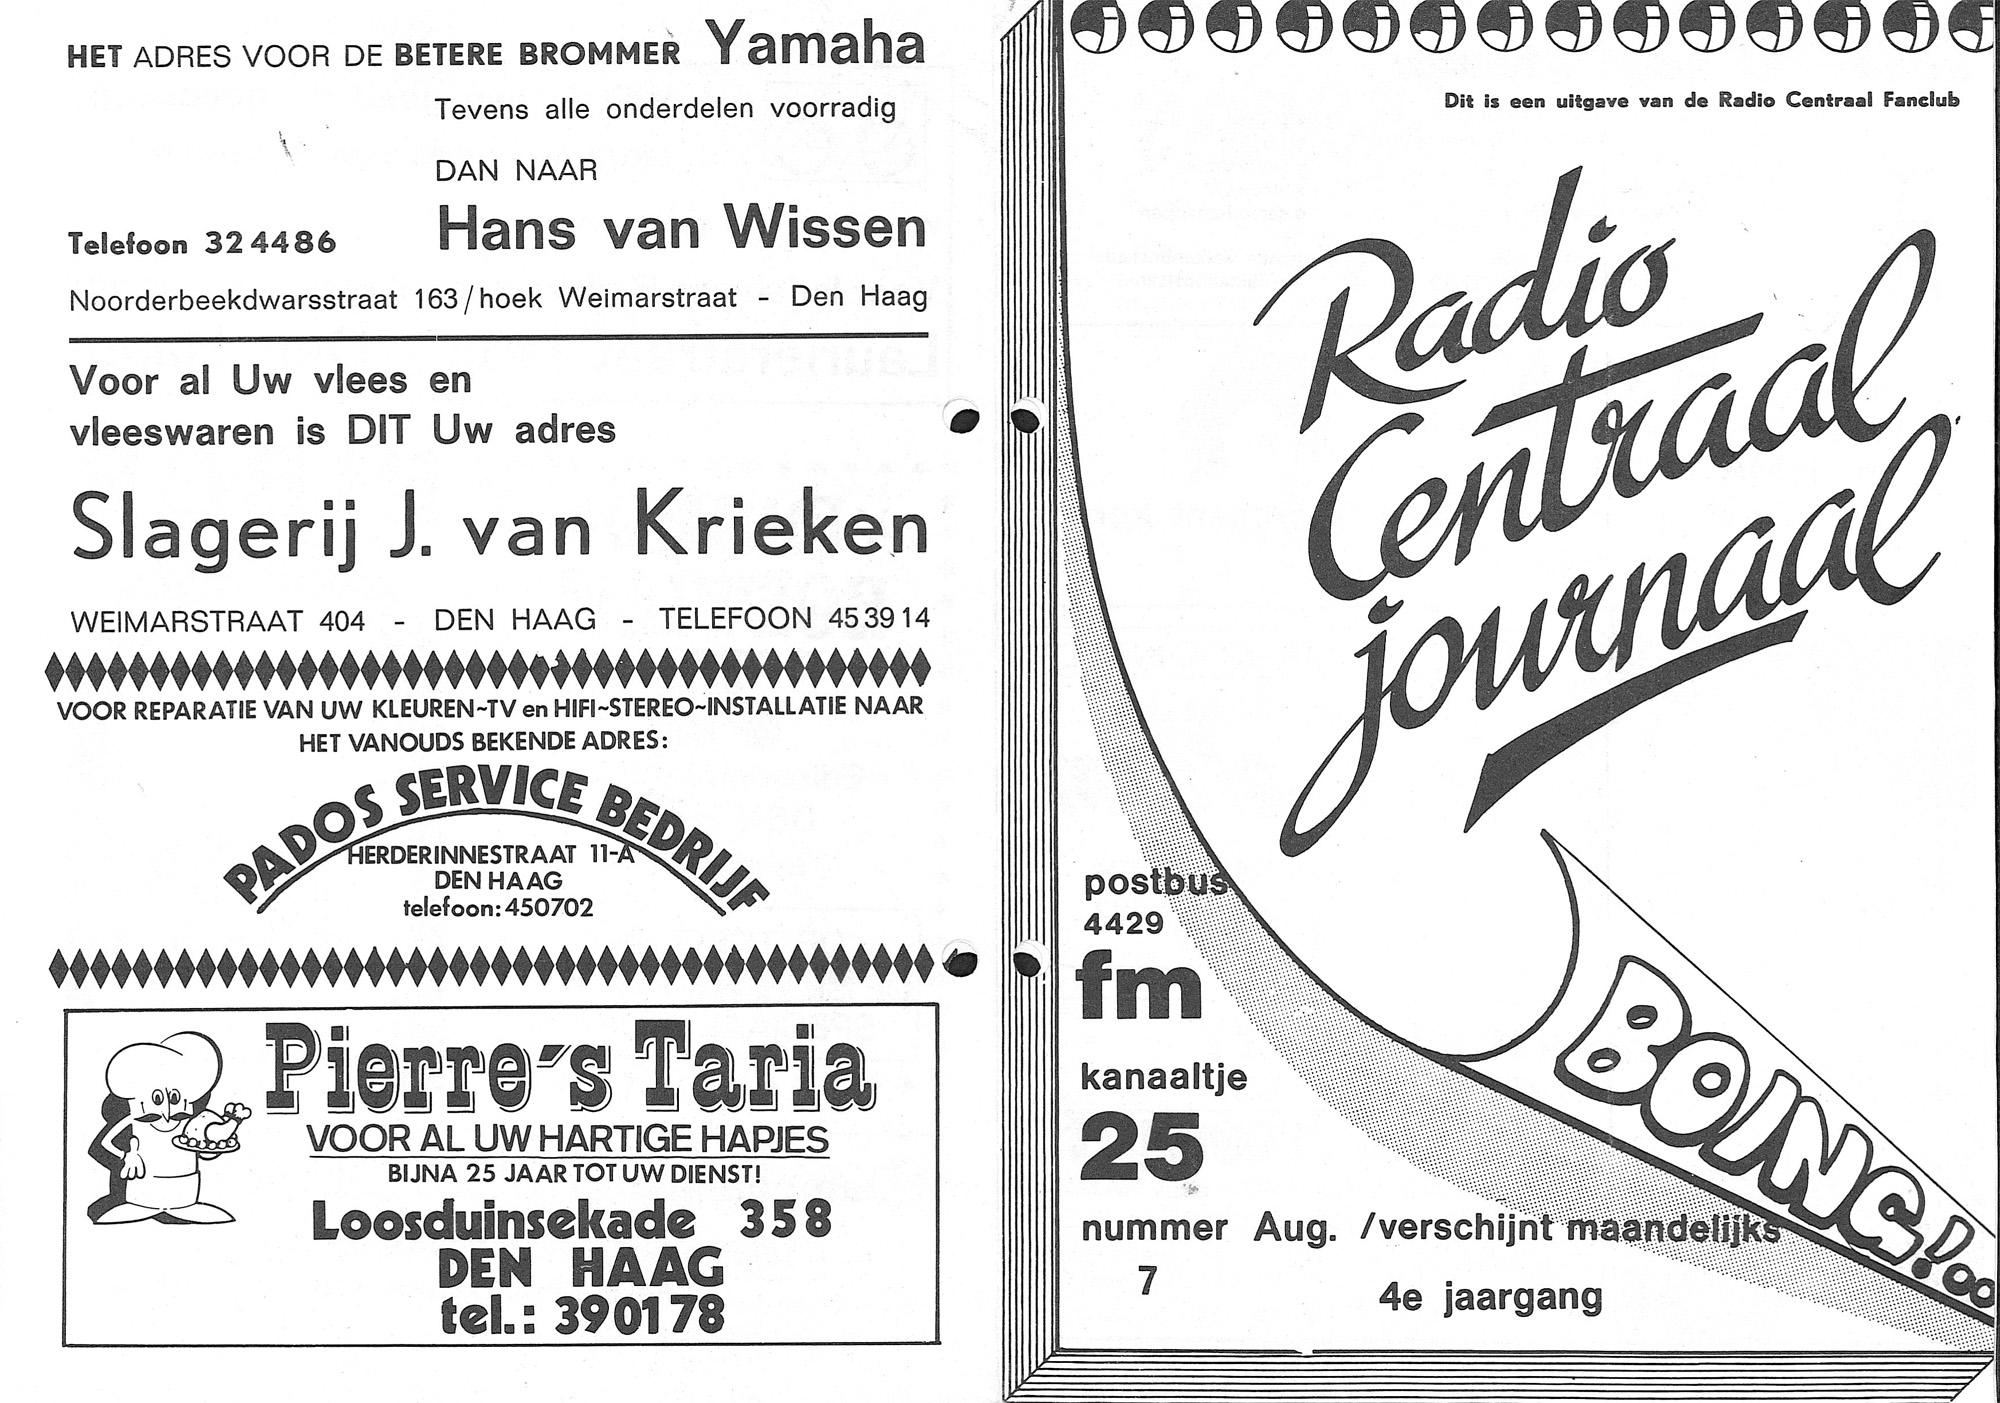 Radio Centraal Journaal - 19770800